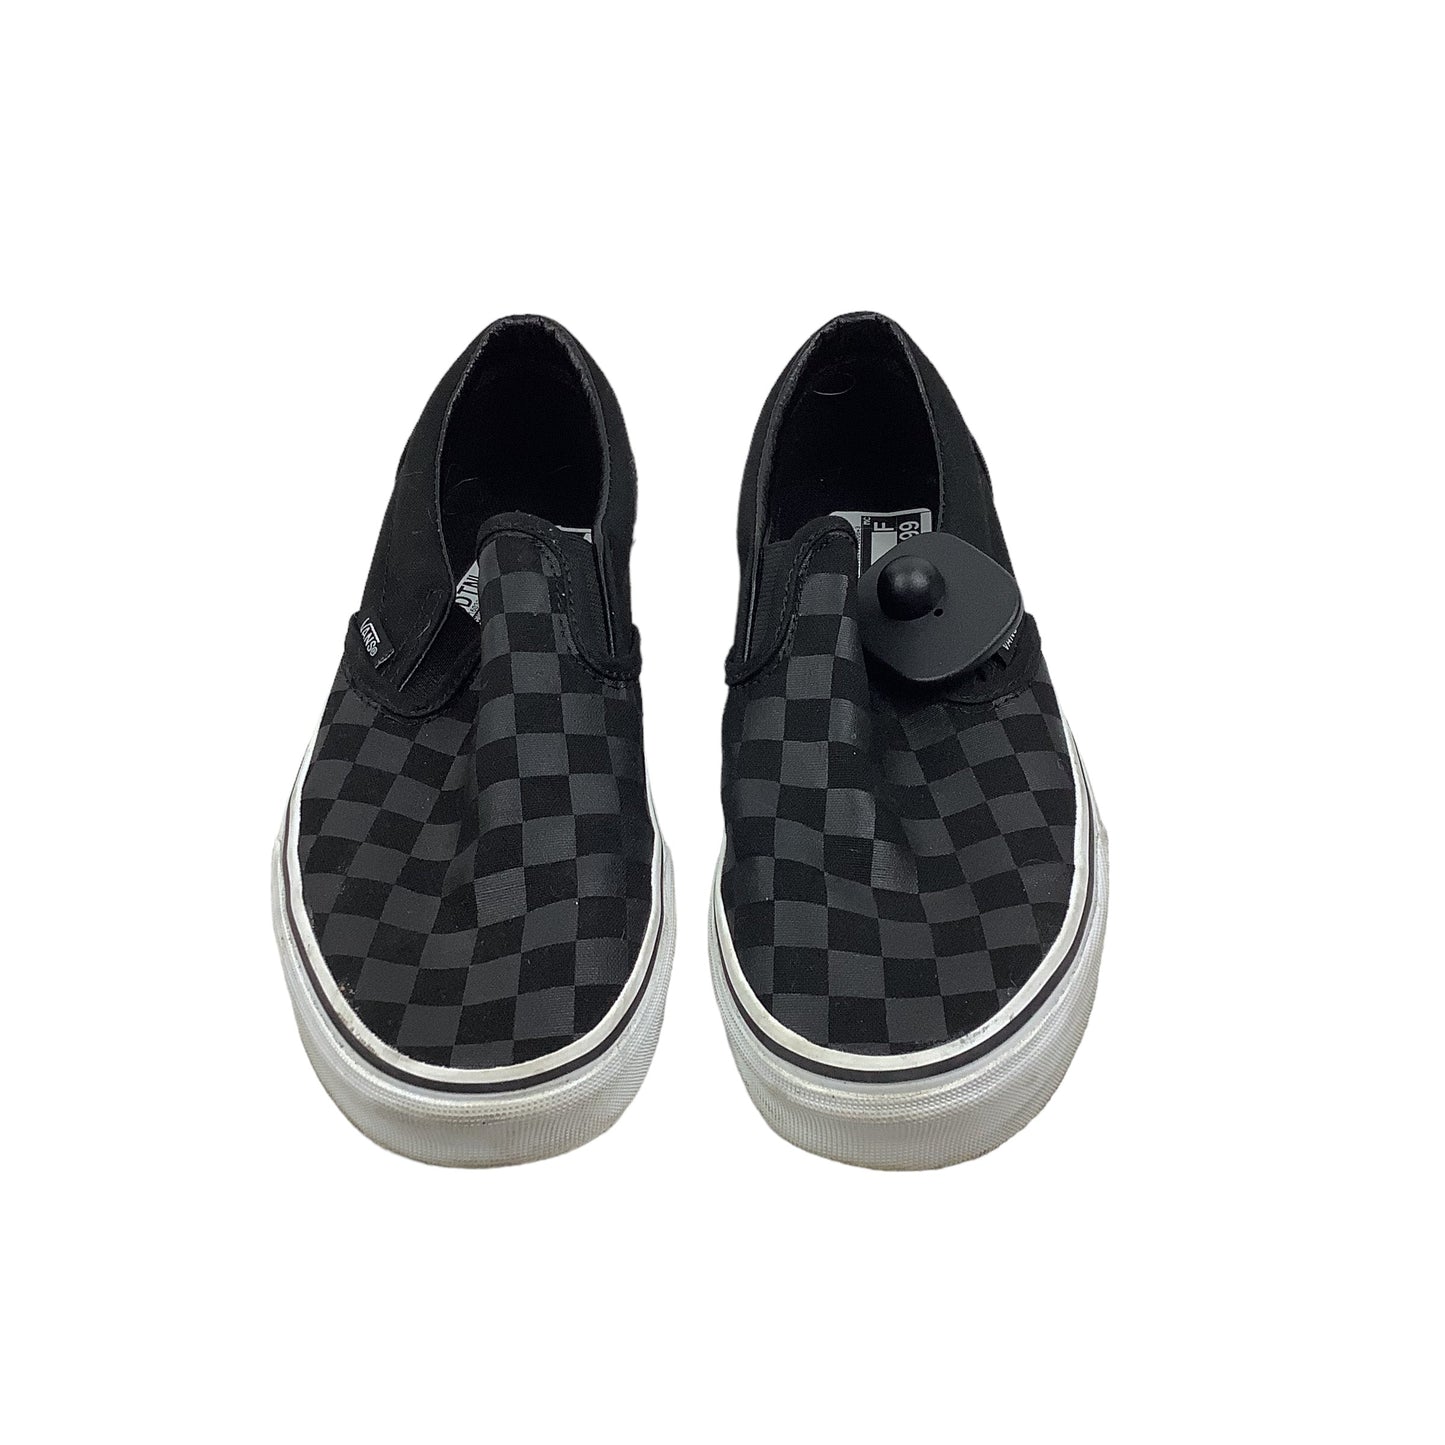 Black Shoes Flats Vans, Size 8.5